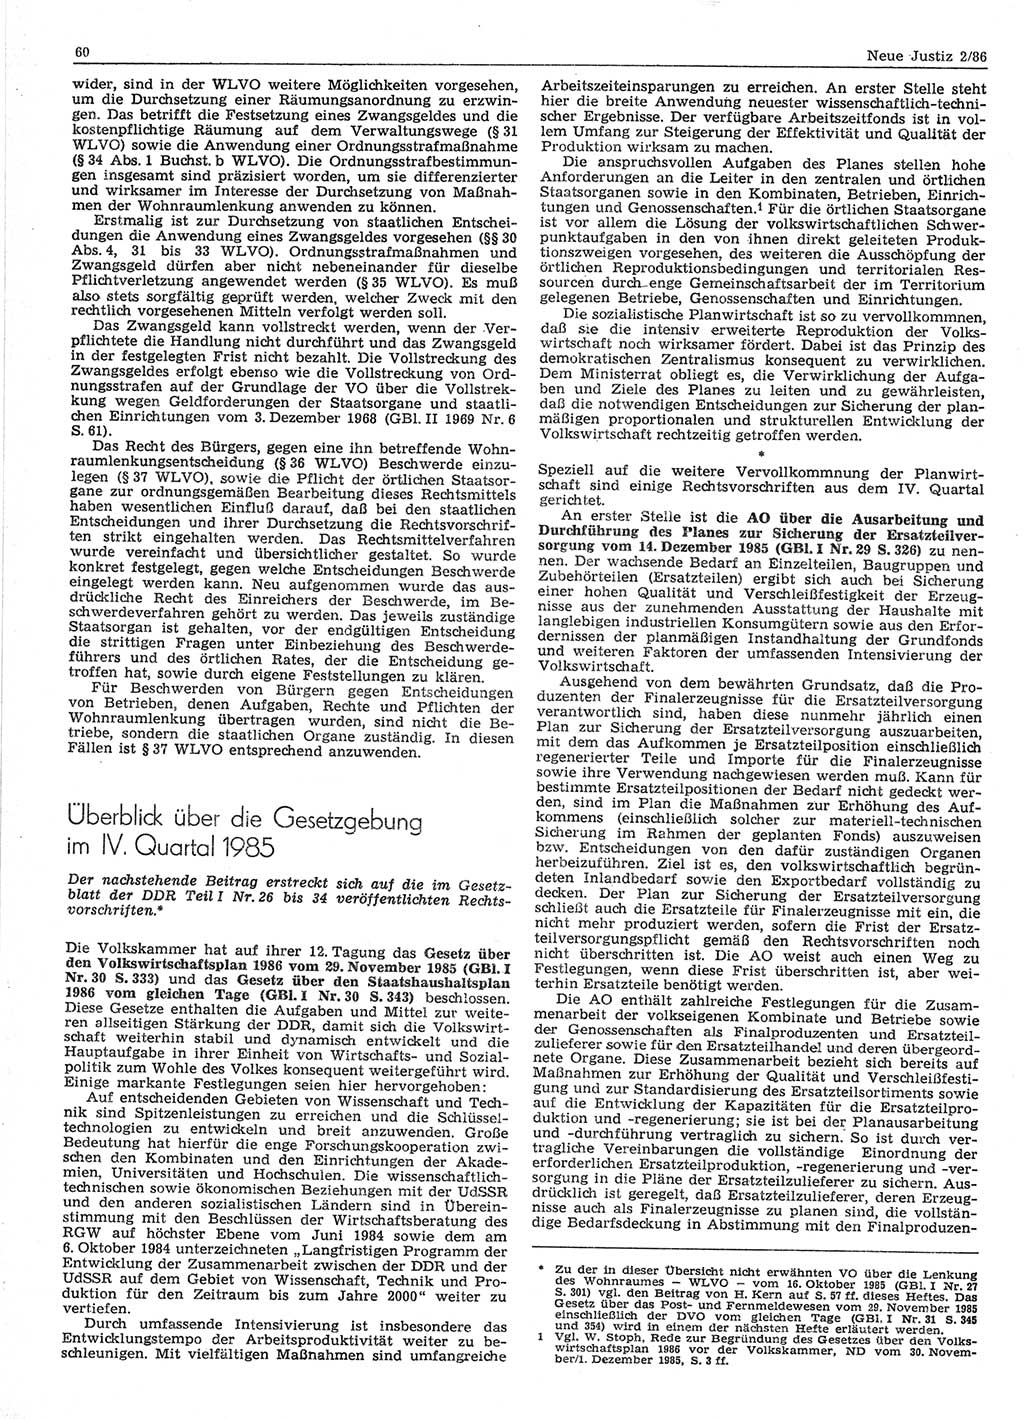 Neue Justiz (NJ), Zeitschrift für sozialistisches Recht und Gesetzlichkeit [Deutsche Demokratische Republik (DDR)], 40. Jahrgang 1986, Seite 60 (NJ DDR 1986, S. 60)